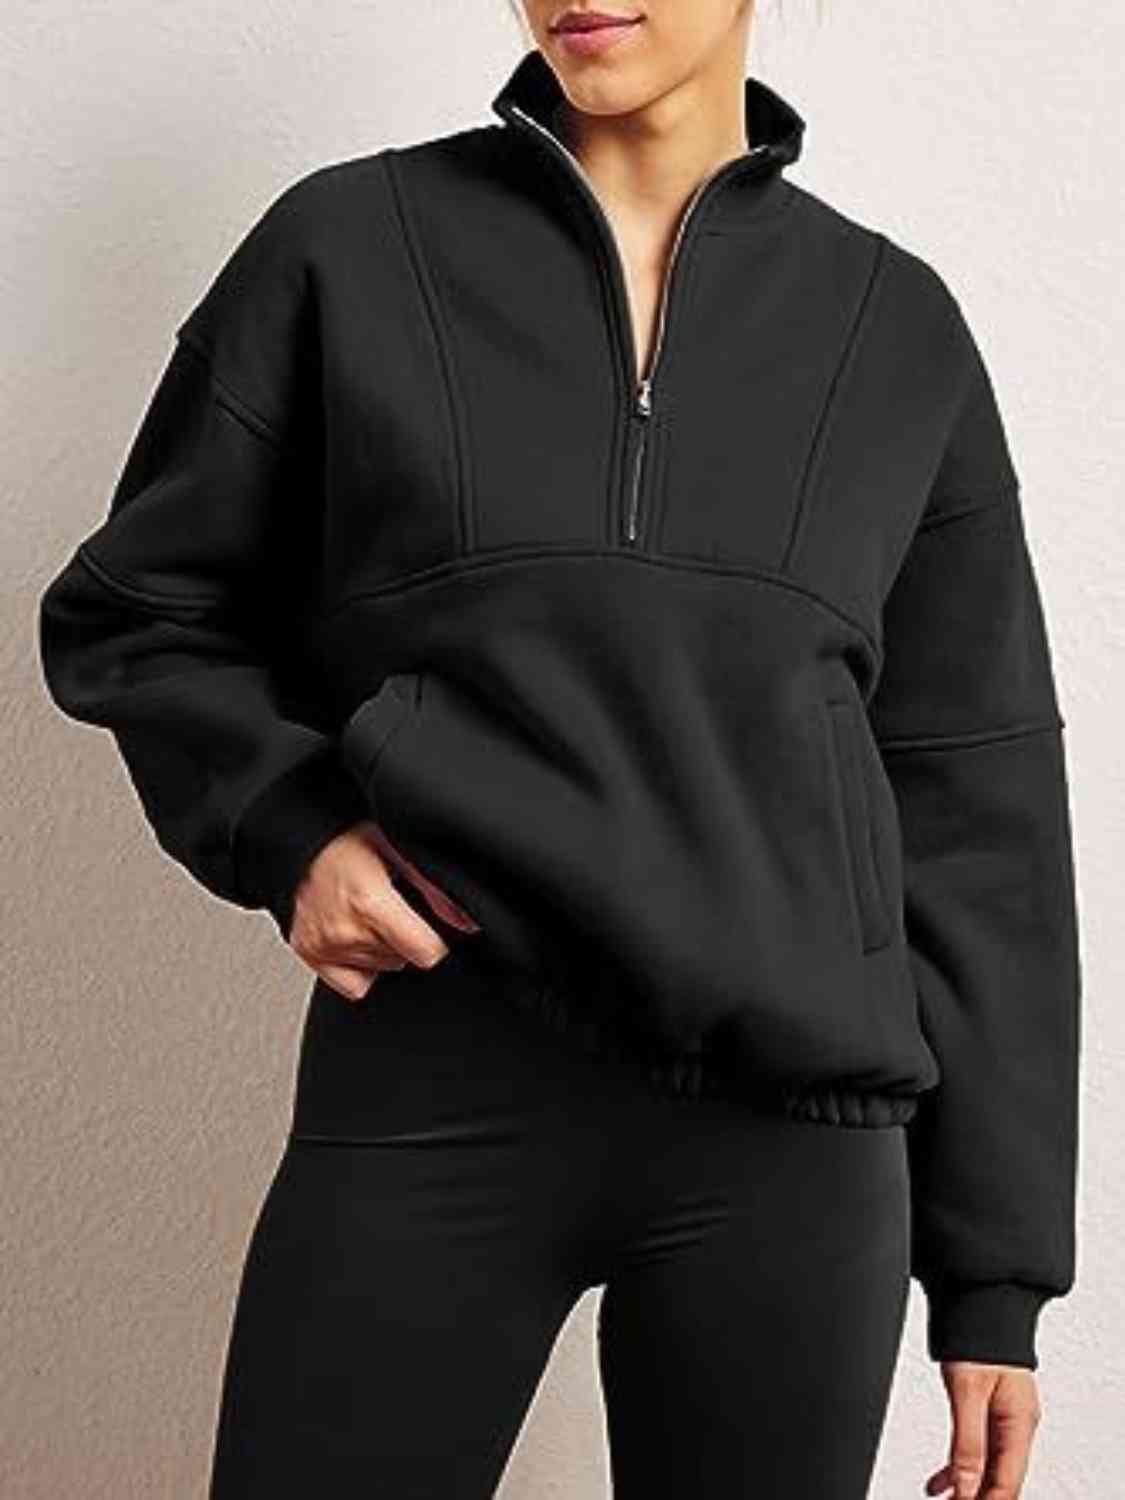 Trendsi Sweatshirt Black / S Half-Zip Long Sleeve Sweatshirt